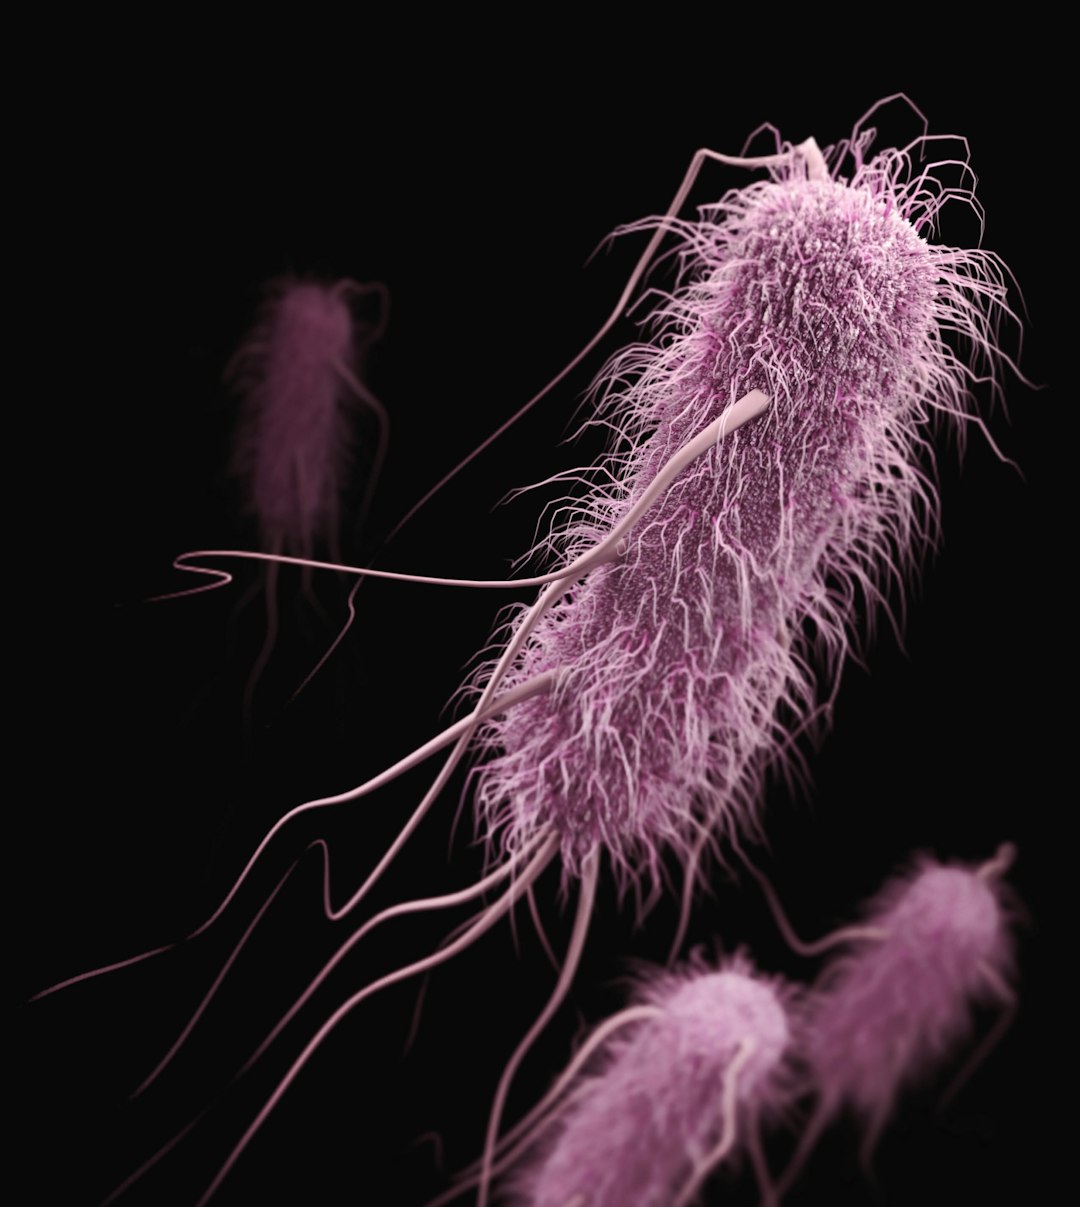 Denitrifying bacteria